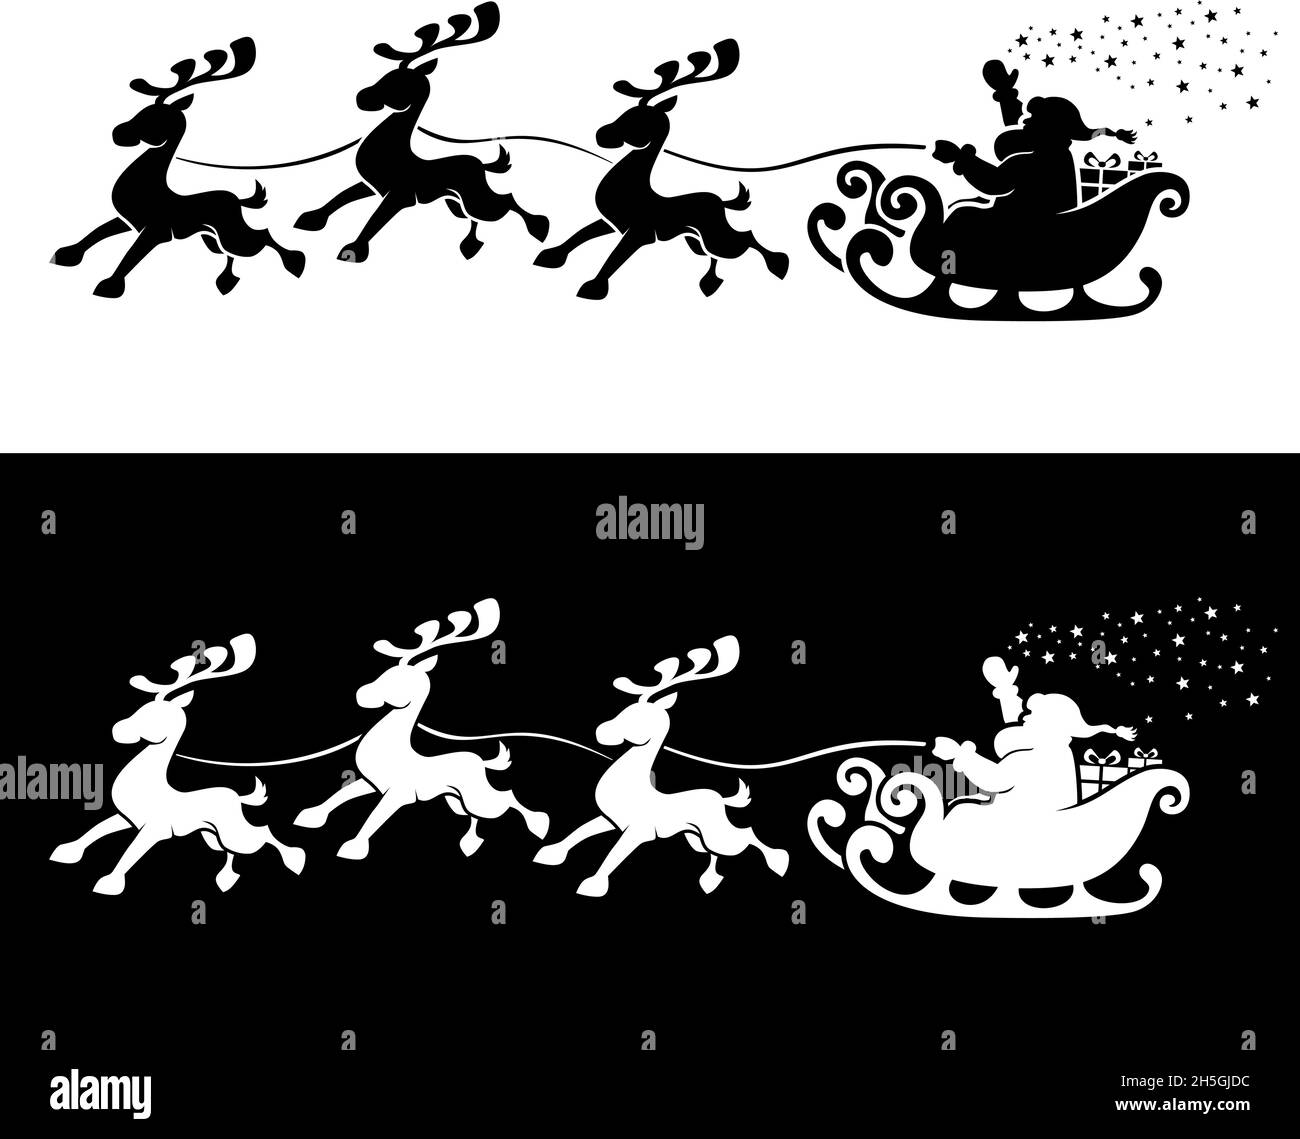 Santa Claus Silhouette im Schlitten voller Geschenke mit Rentieren. Frohe weihnachten und ein glückliches neues Jahr Dekoration. Vectop auf transparentem und dunklem Backgrou Stock Vektor